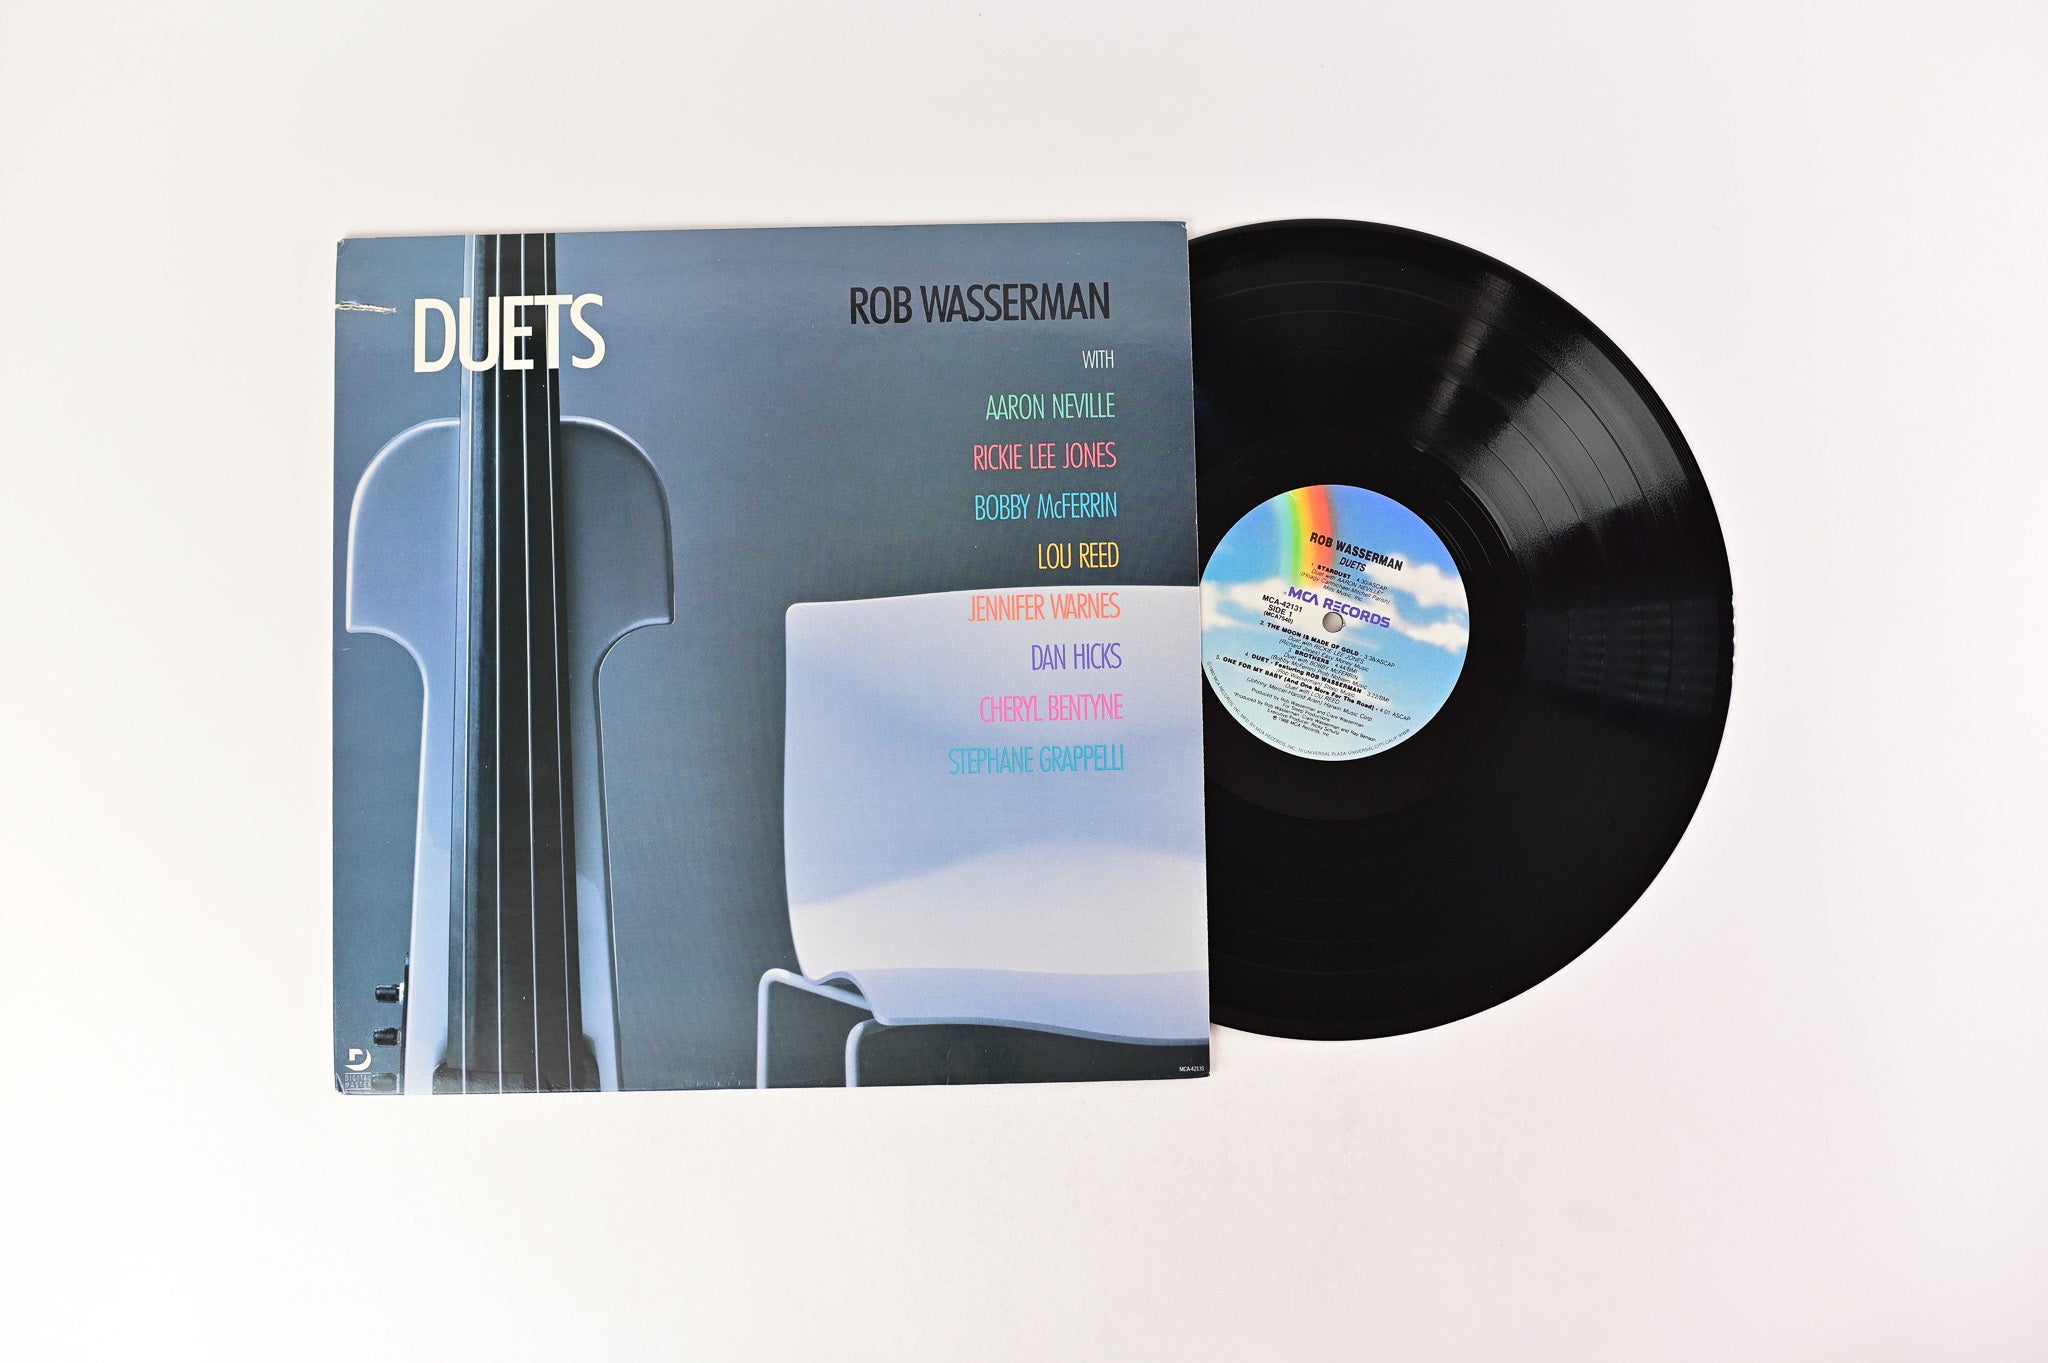 Rob Wasserman - Duets on MCA